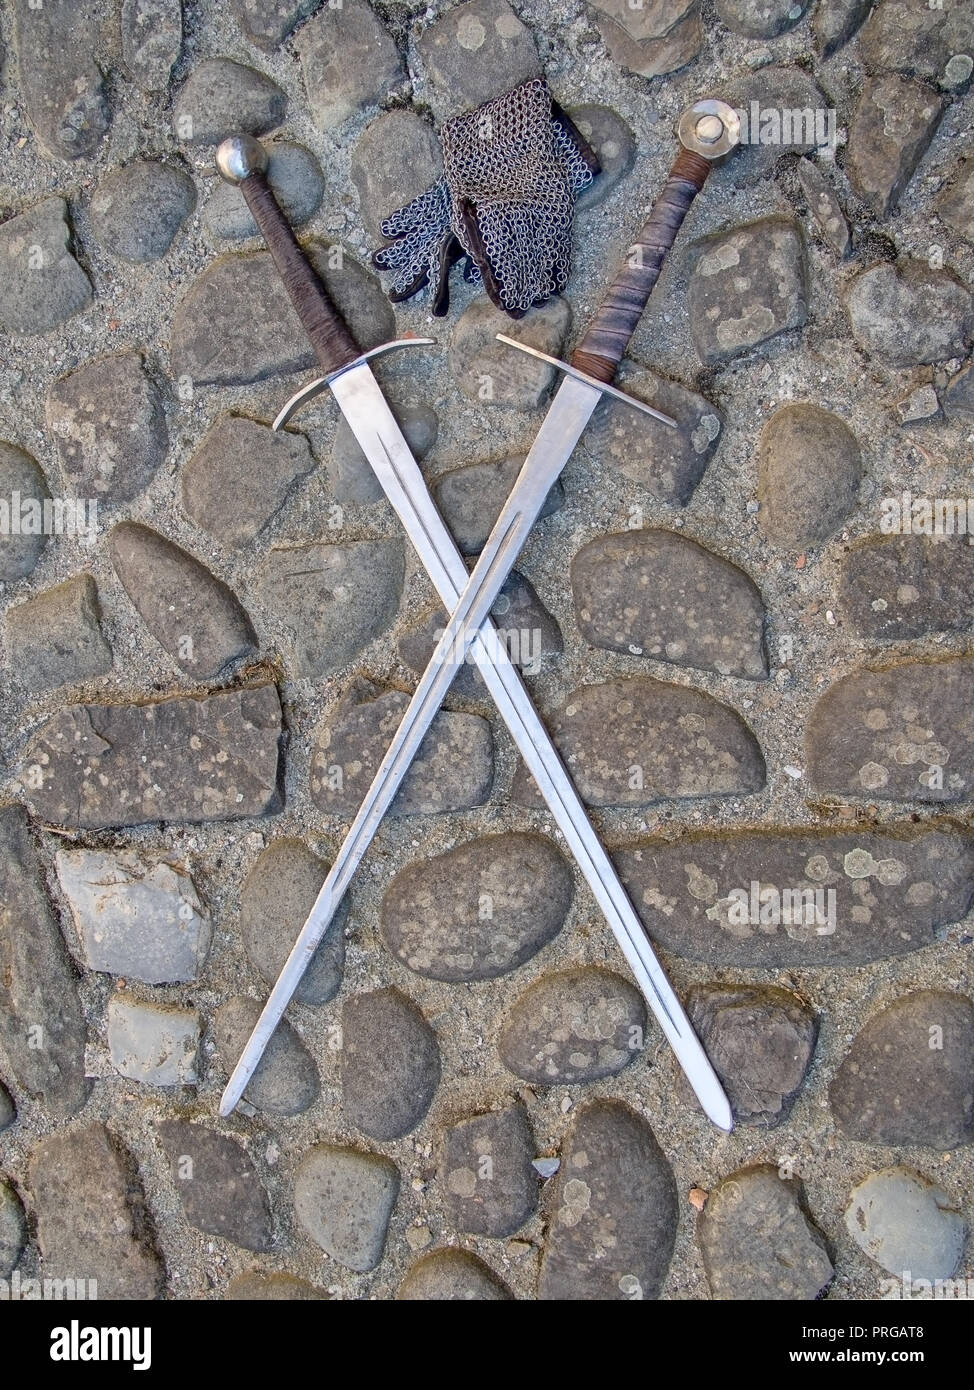 Deux épées médiévales, croisés, sur les pavés, avec des gants en mailles. Banque D'Images